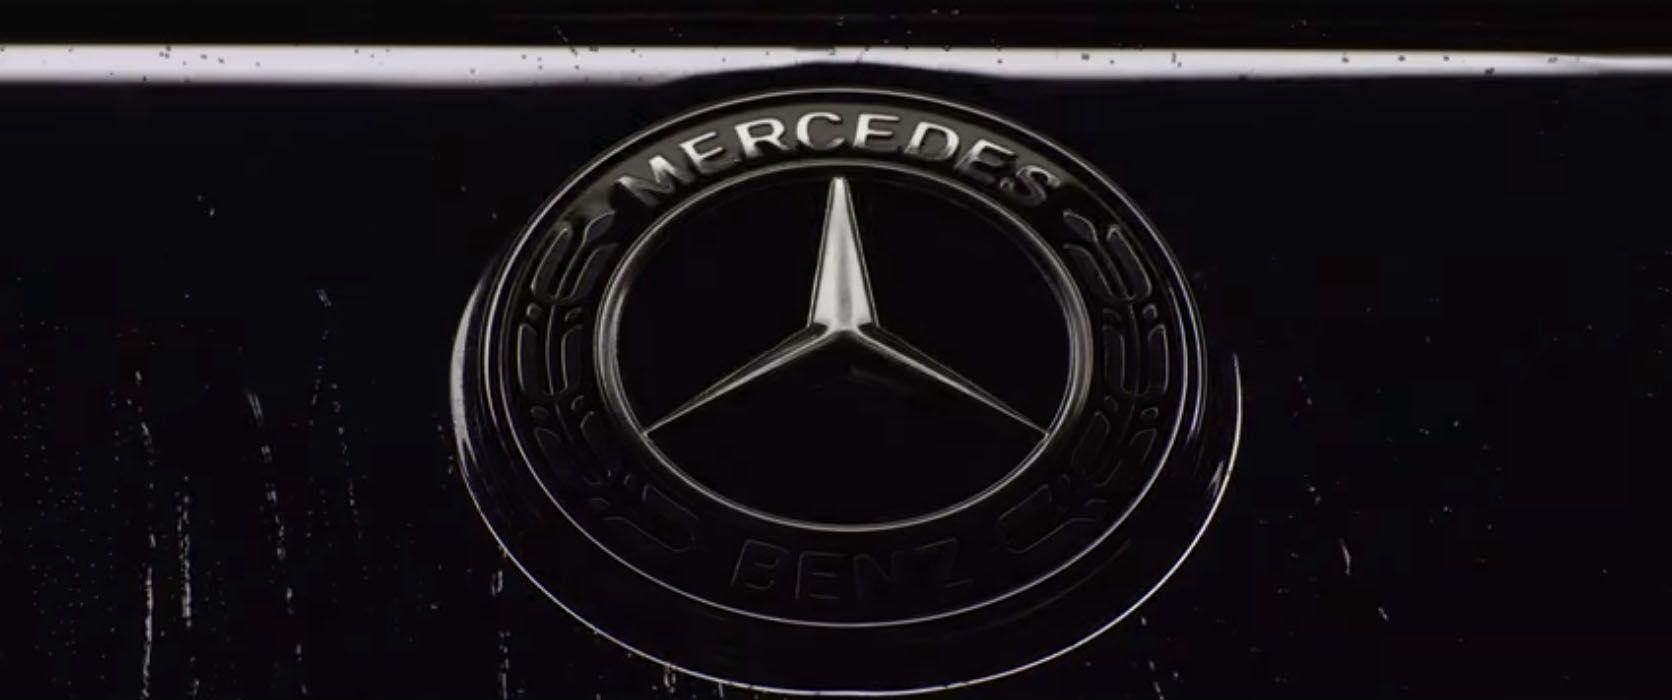 2018 Mercedes Logo - 2018 S-Class Commercial Finally Makes Sense of the Mercedes-Benz ...